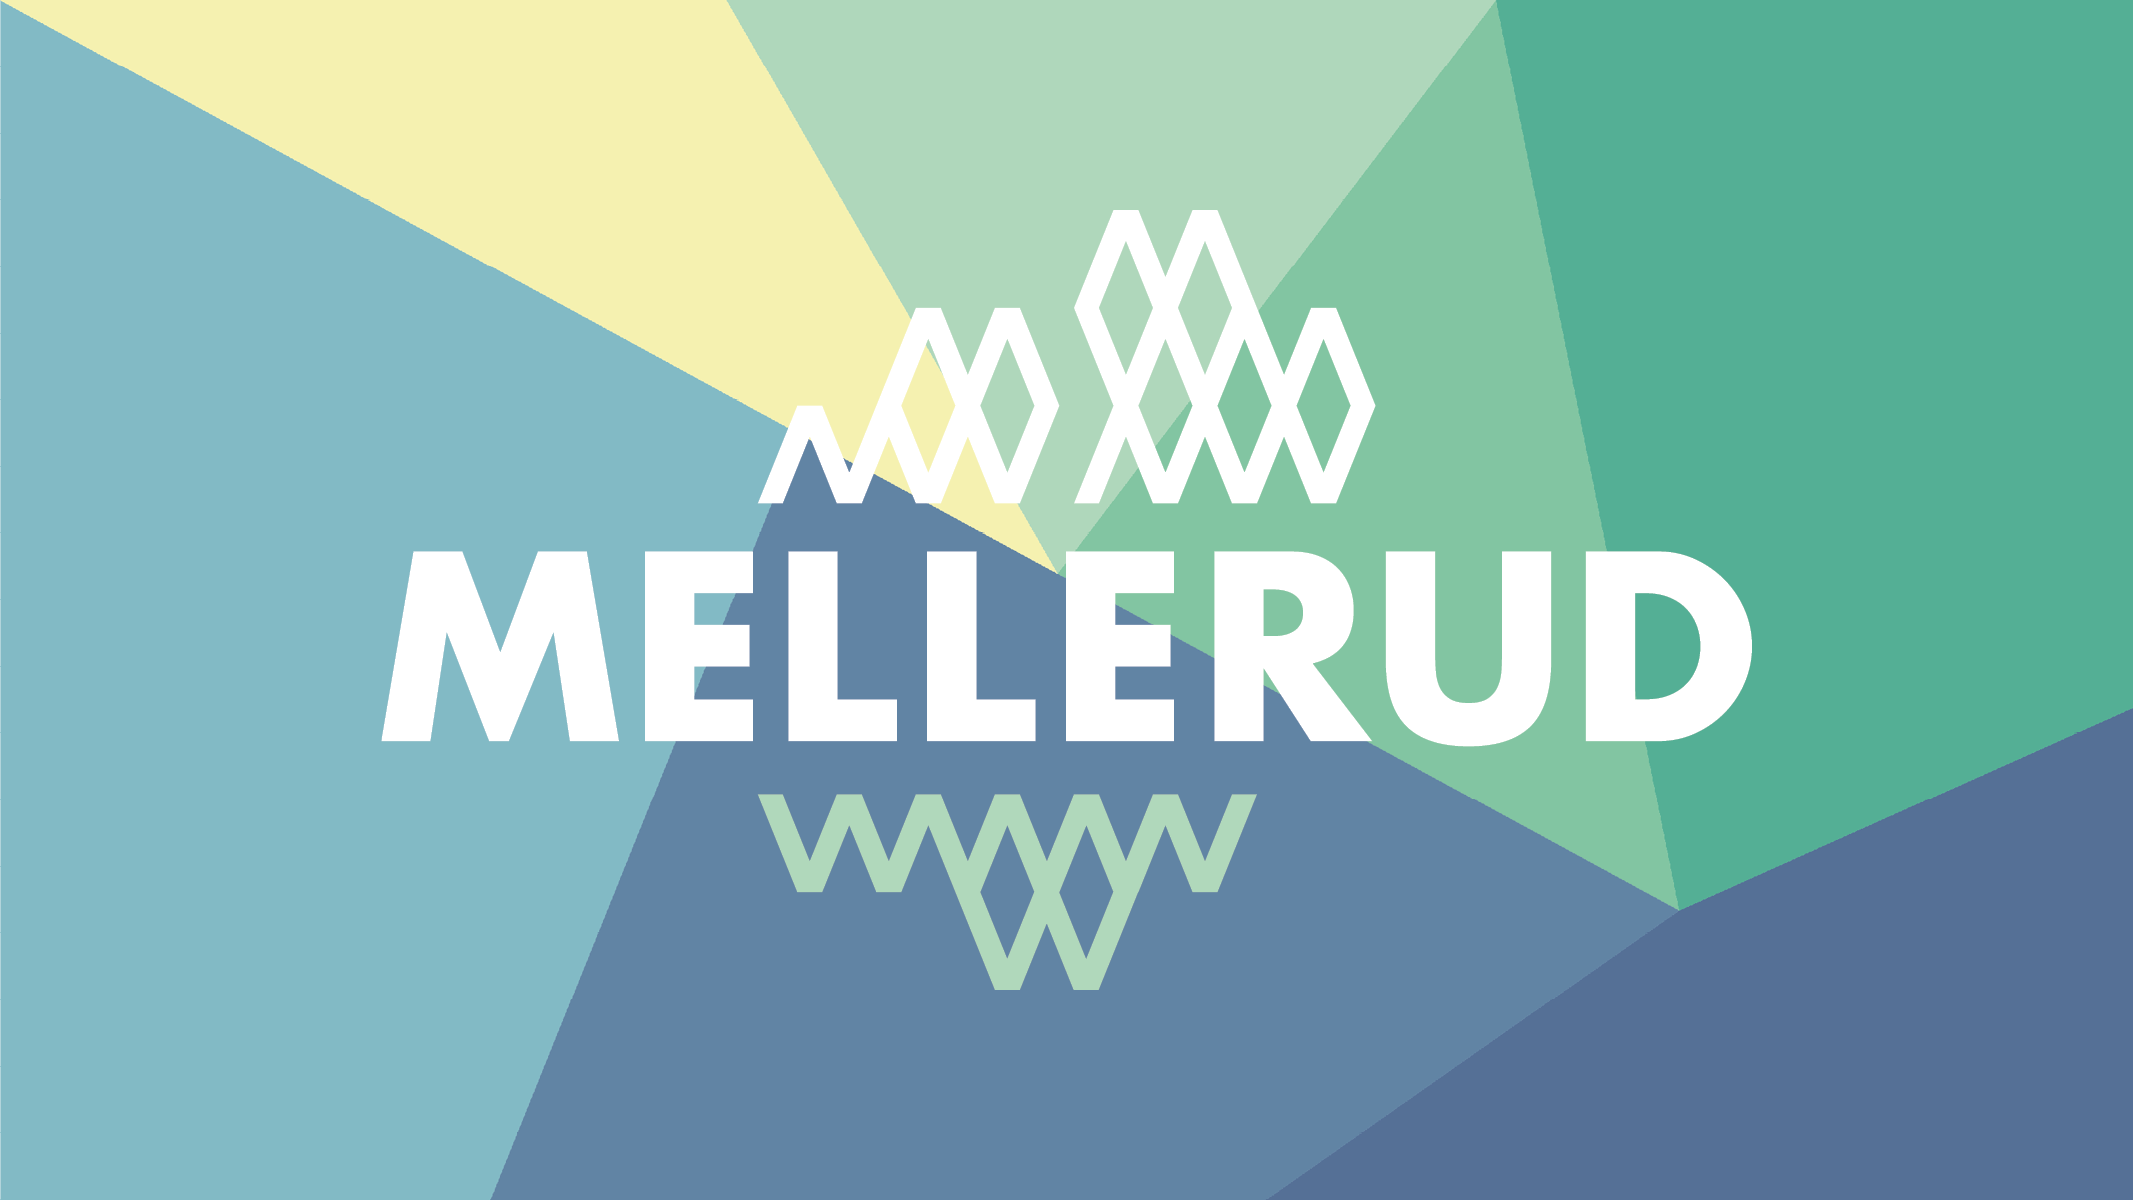 En vit logotyp som består av texten Mellerud. Ovanför texten bildar bokstaven M en siluett av berg. Under texten speglar sig samma siluett av bokstaven M i ljusgrönt.